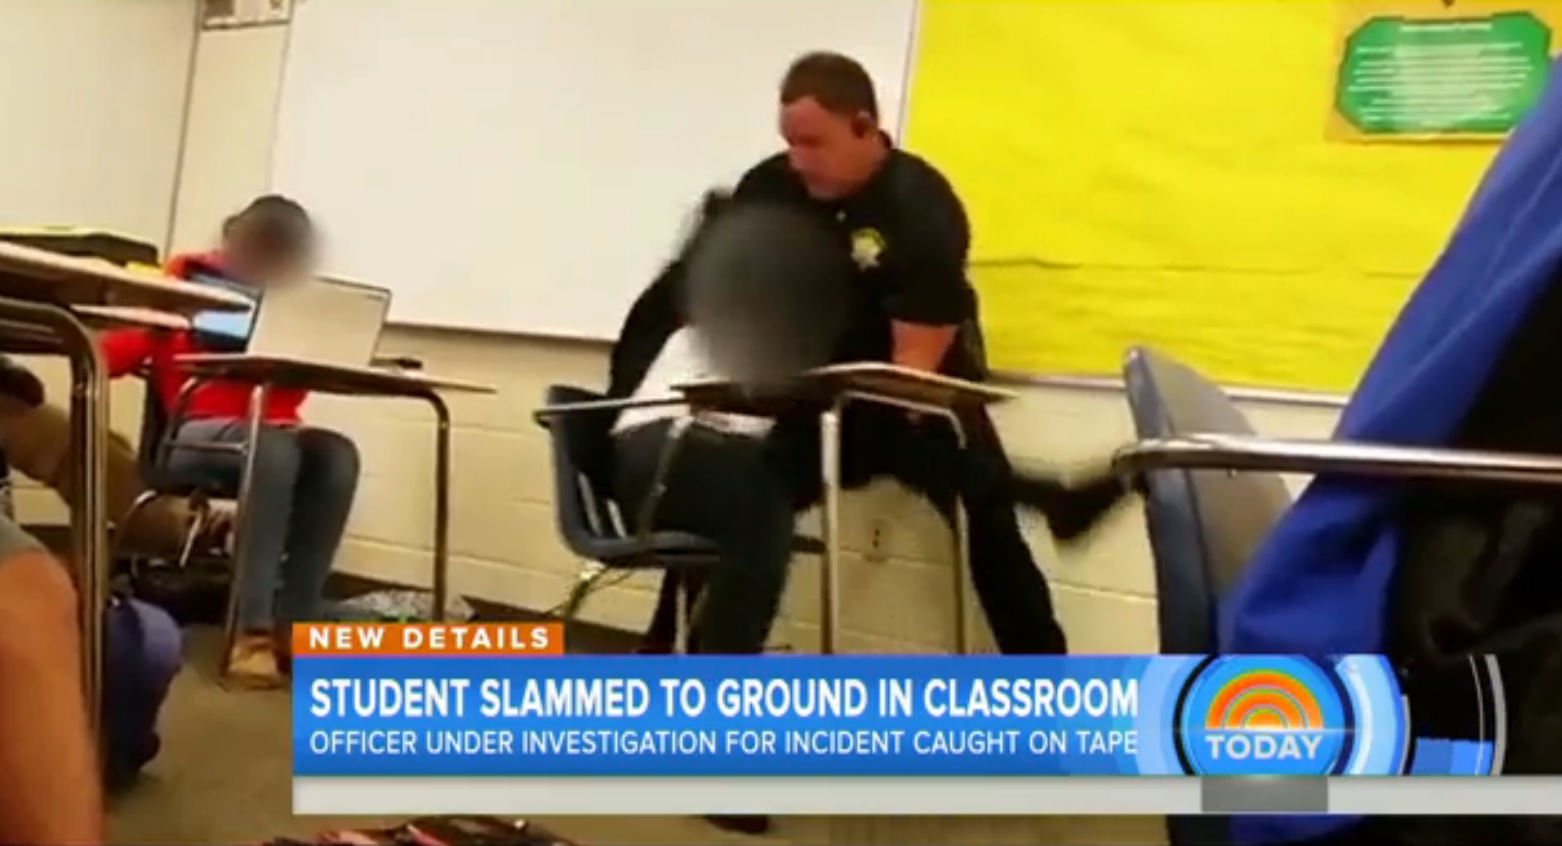 Aluna agredida por polícia em plena sala de aula [vídeo]